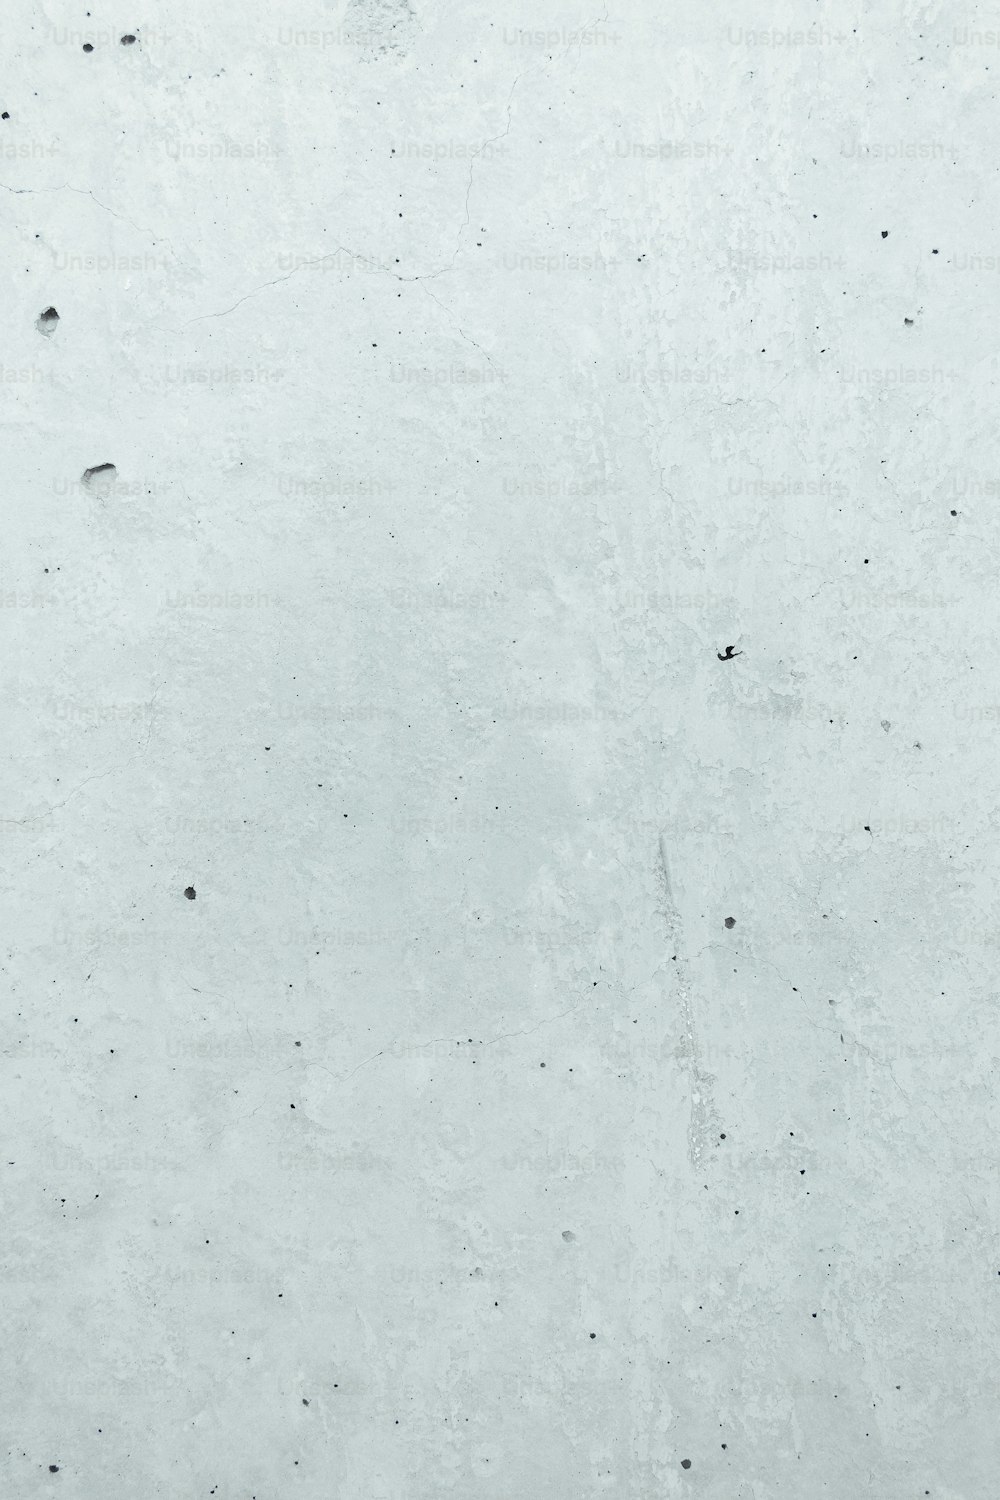 스노우 보드에있는 사람의 흑백 사진